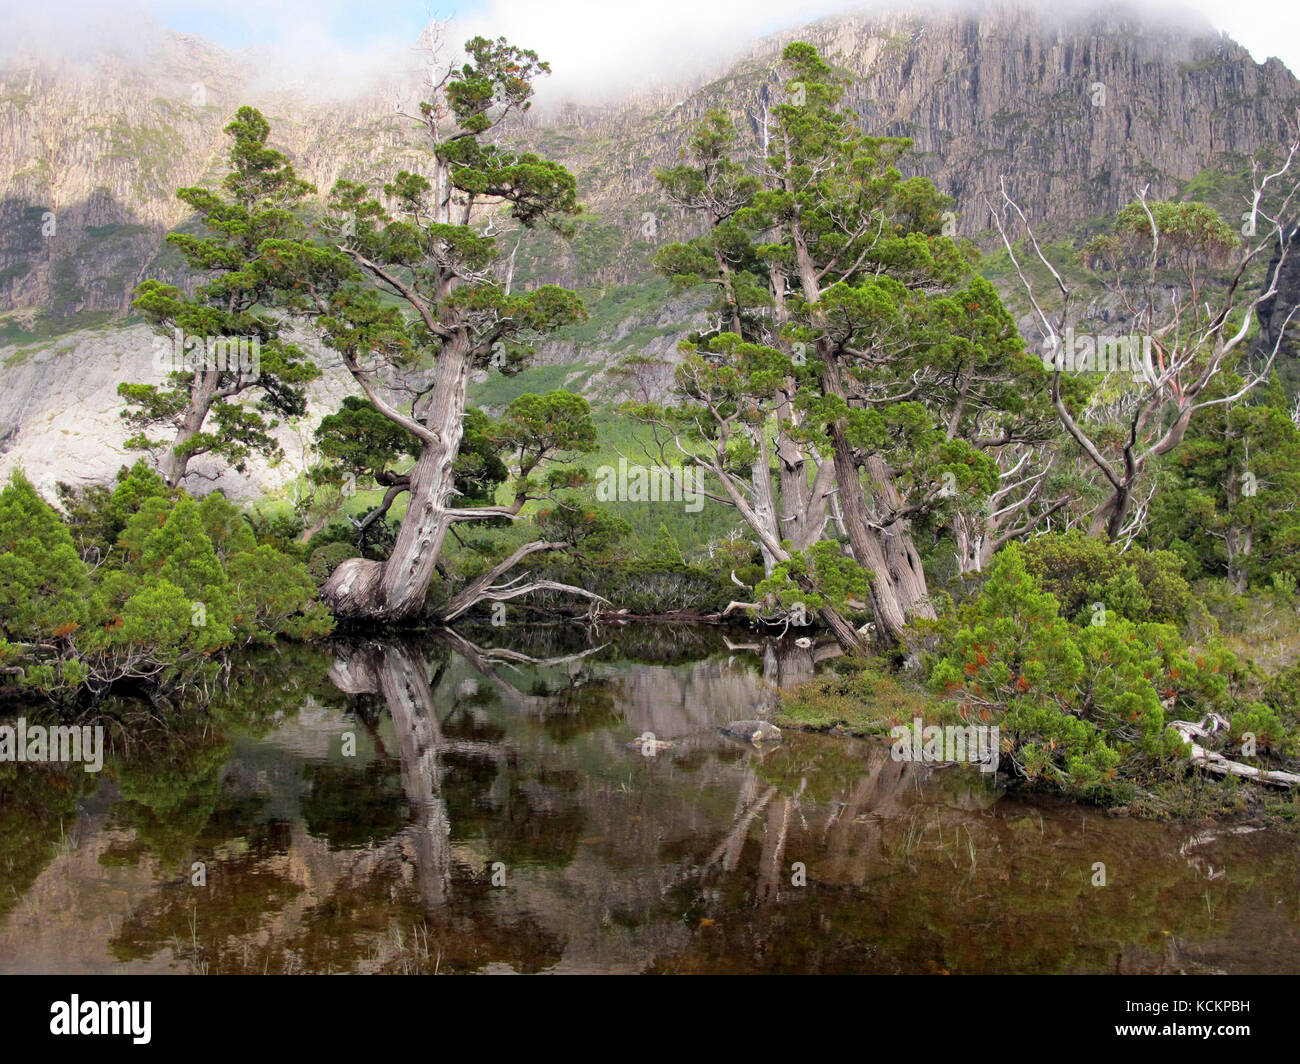 King Billy pines (Athrotaxis selaginoides), framing Artist’s Pool, Cradle Mountain-Lake St Clair National Park, Tasmania, Australia Stock Photo